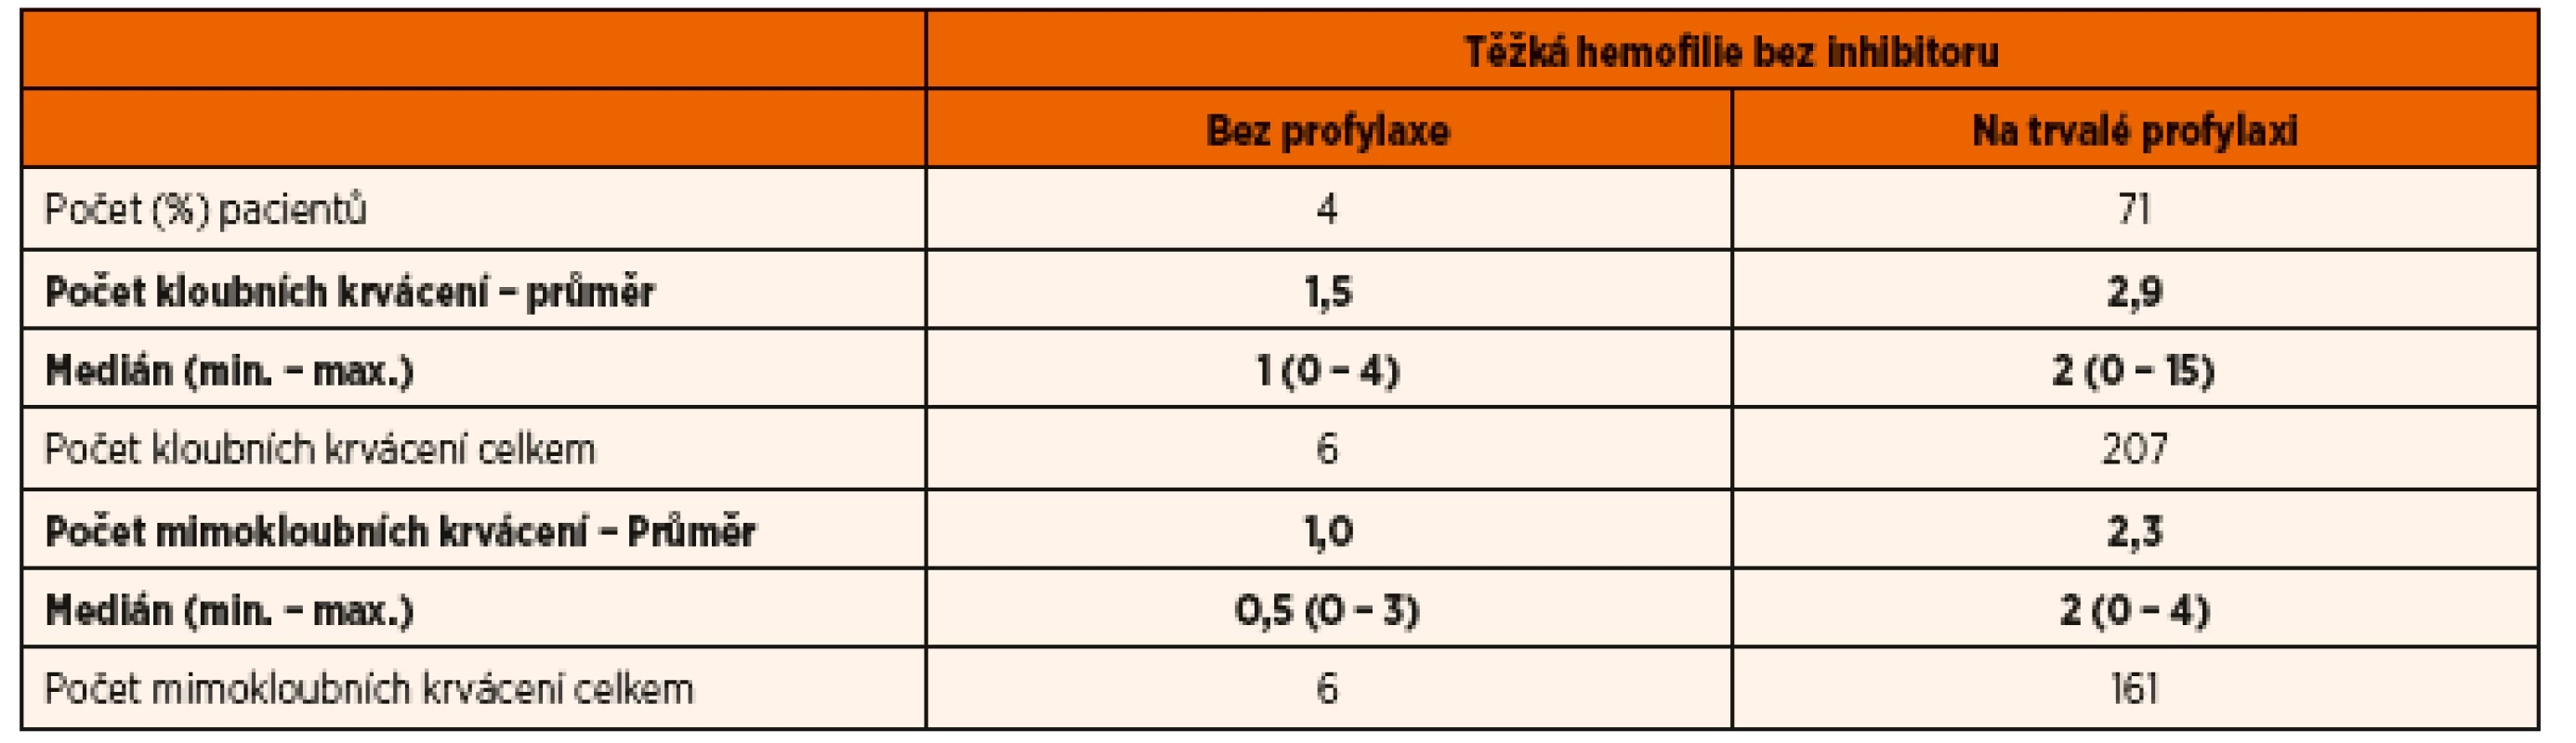 Počet kloubních a mimokloubních krvácení u českých dětí s těžkou hemofilií (A i B) v roce 2015.